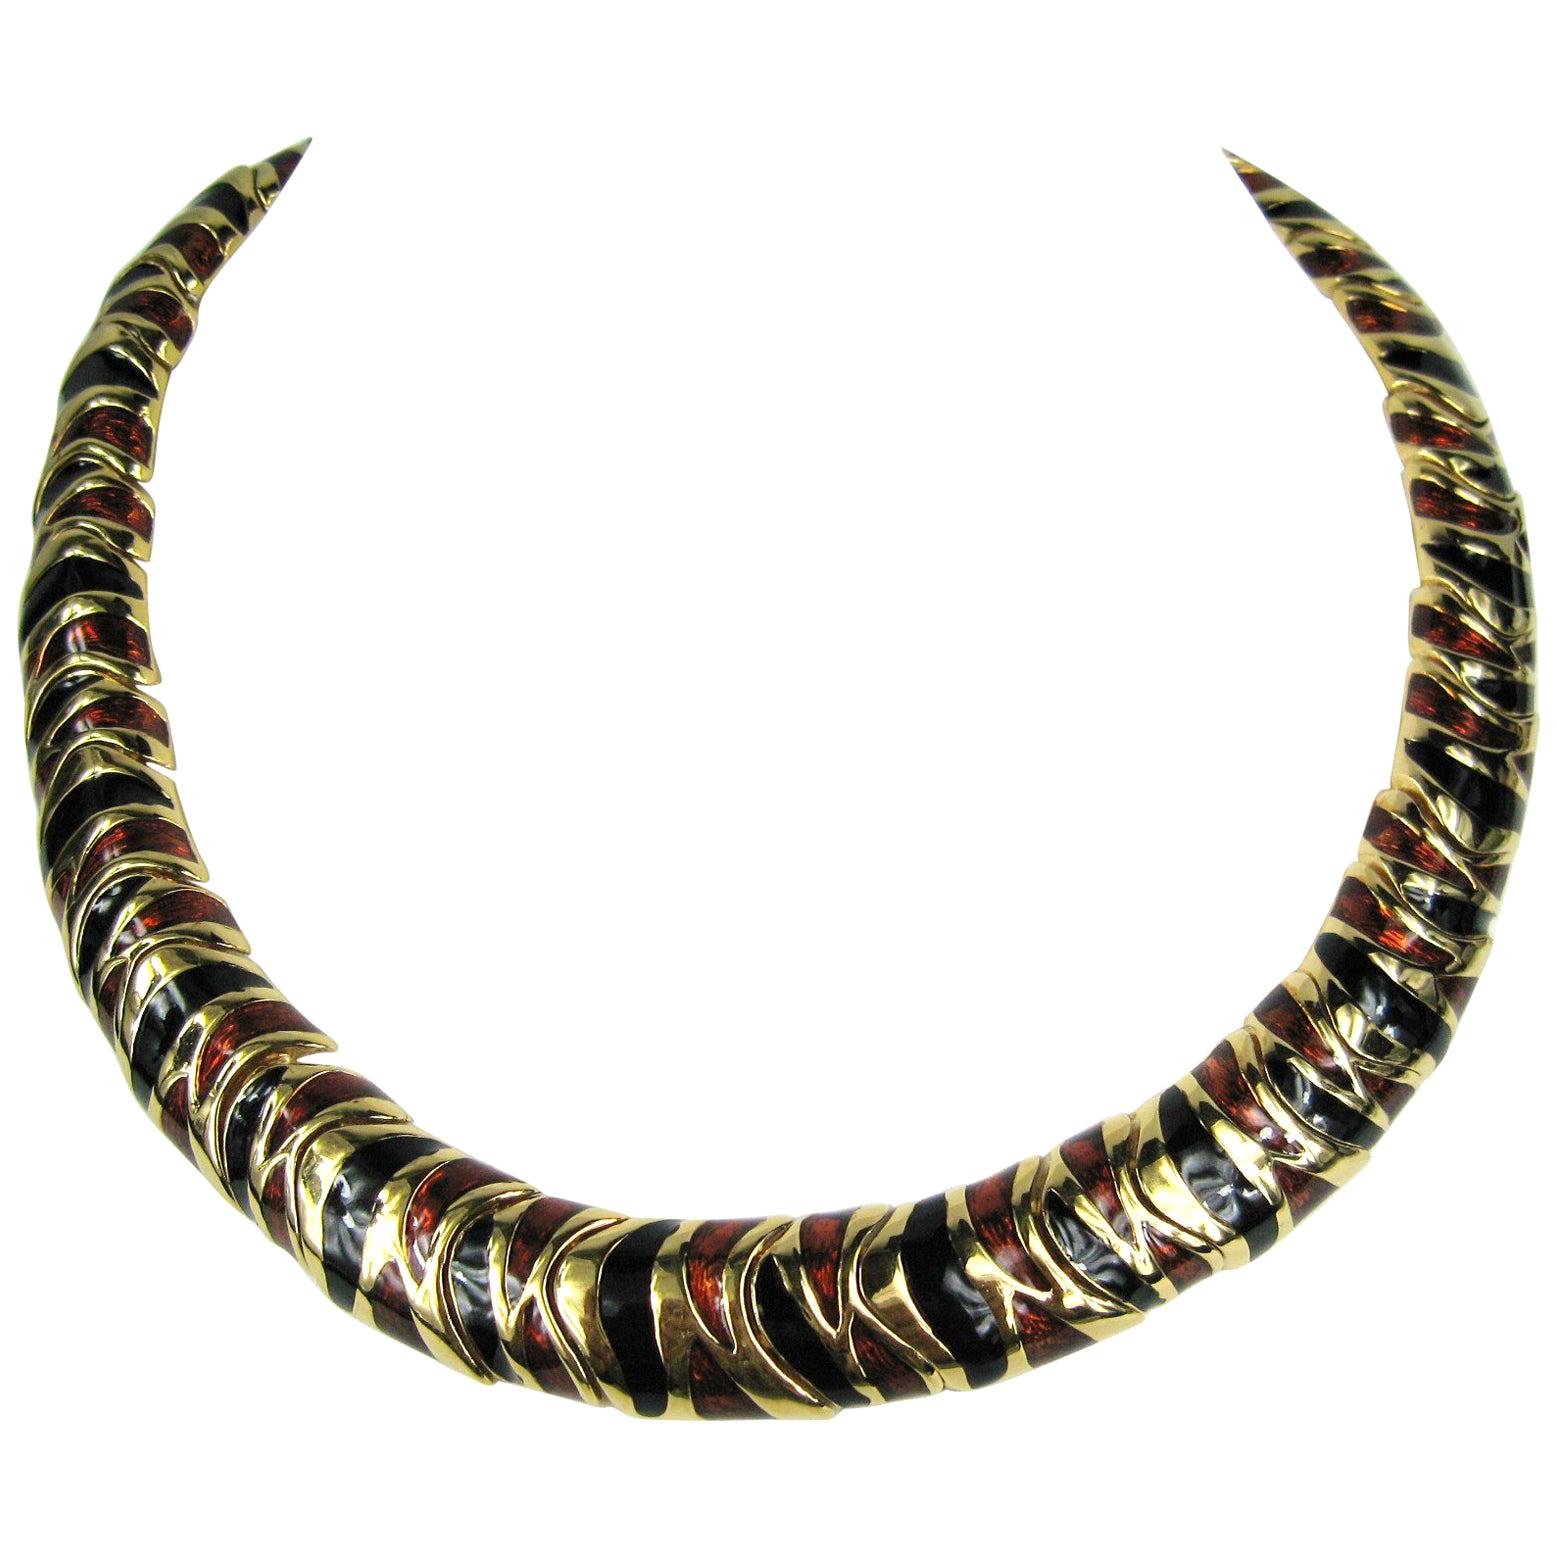  Ciner Bronze & Black Enameled Necklace New, Never Worn 1980s  For Sale